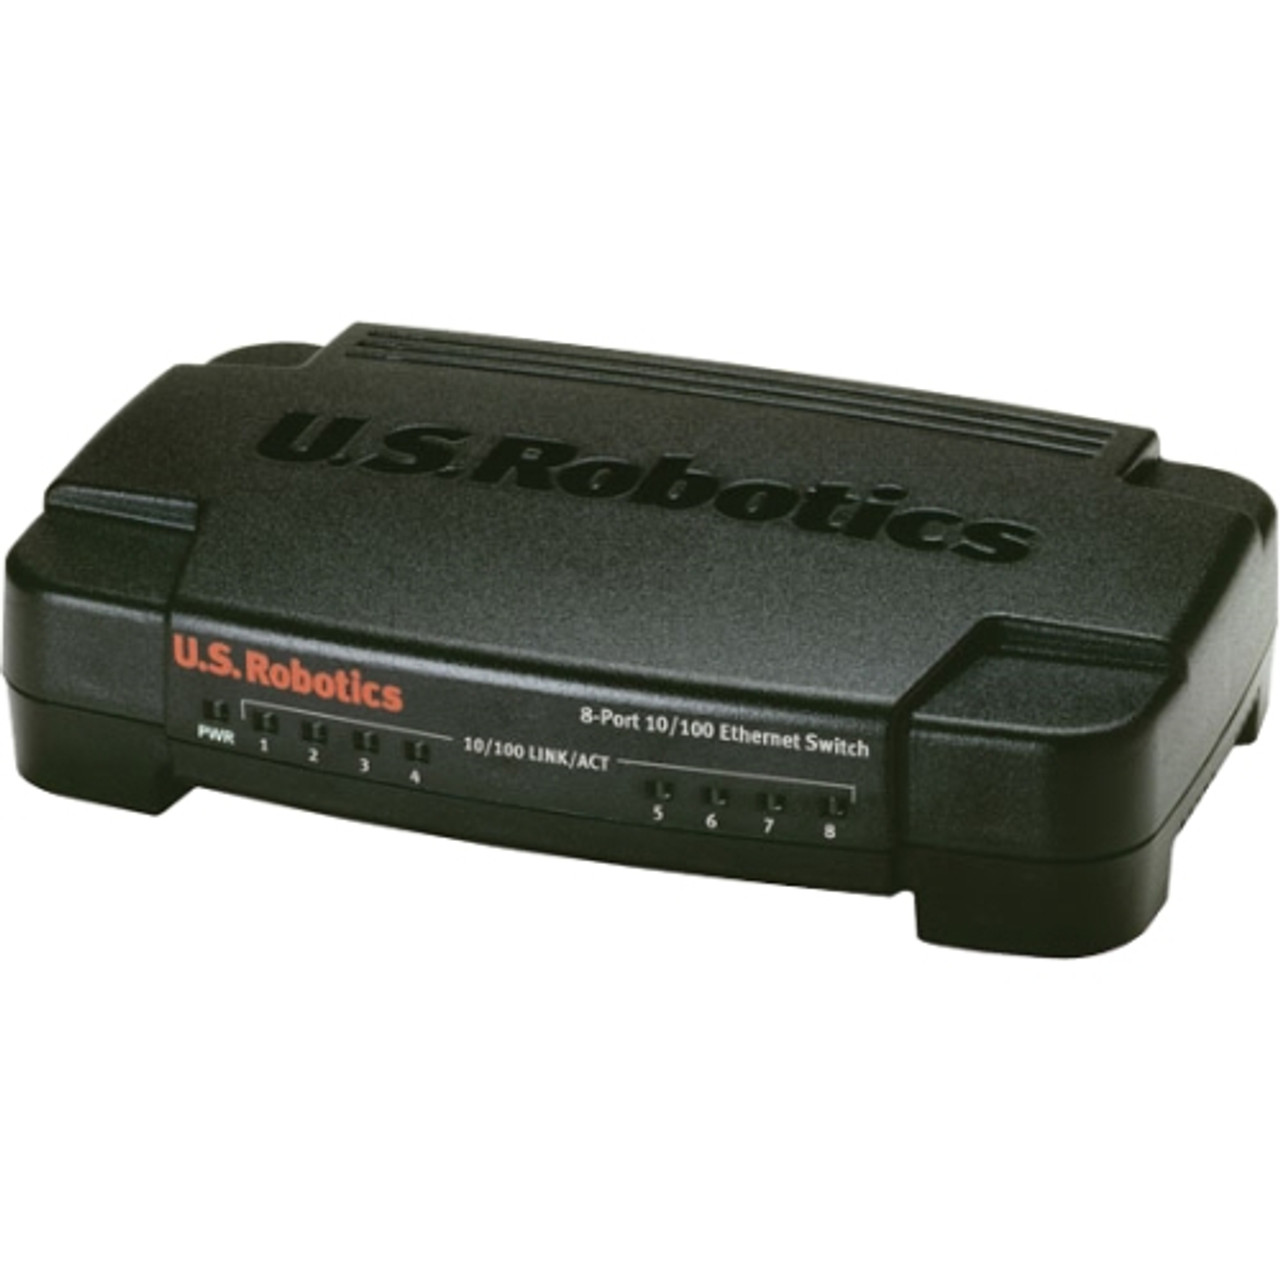 USR7908-NFR U.S. Robotics USR7908 Ethernet Switch (Refurbished)